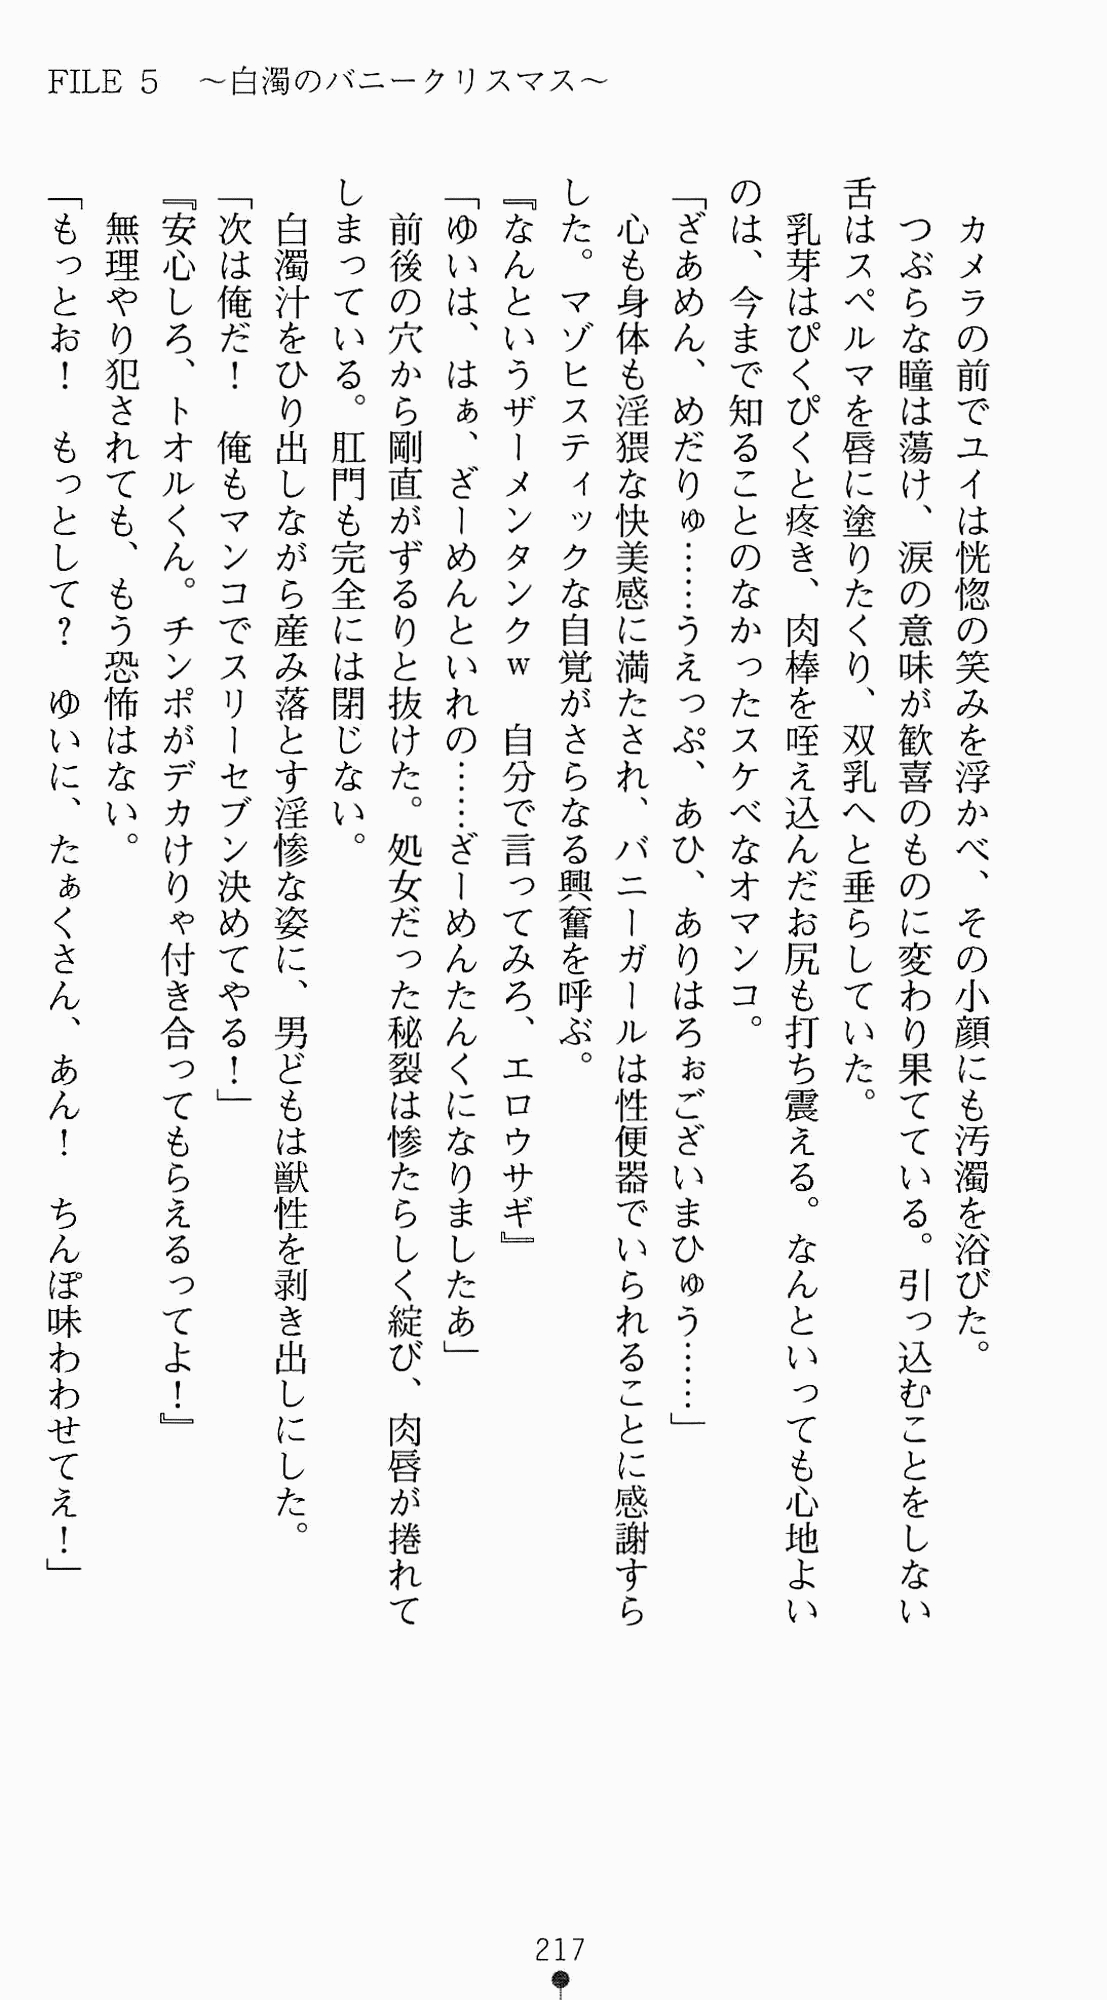 [Kagura Youko, Takahama Tarou] Shiritsu Tantei Takasuga Erika no Jikenbo 2 - Chijouha AV Satsuei 24-ji 232